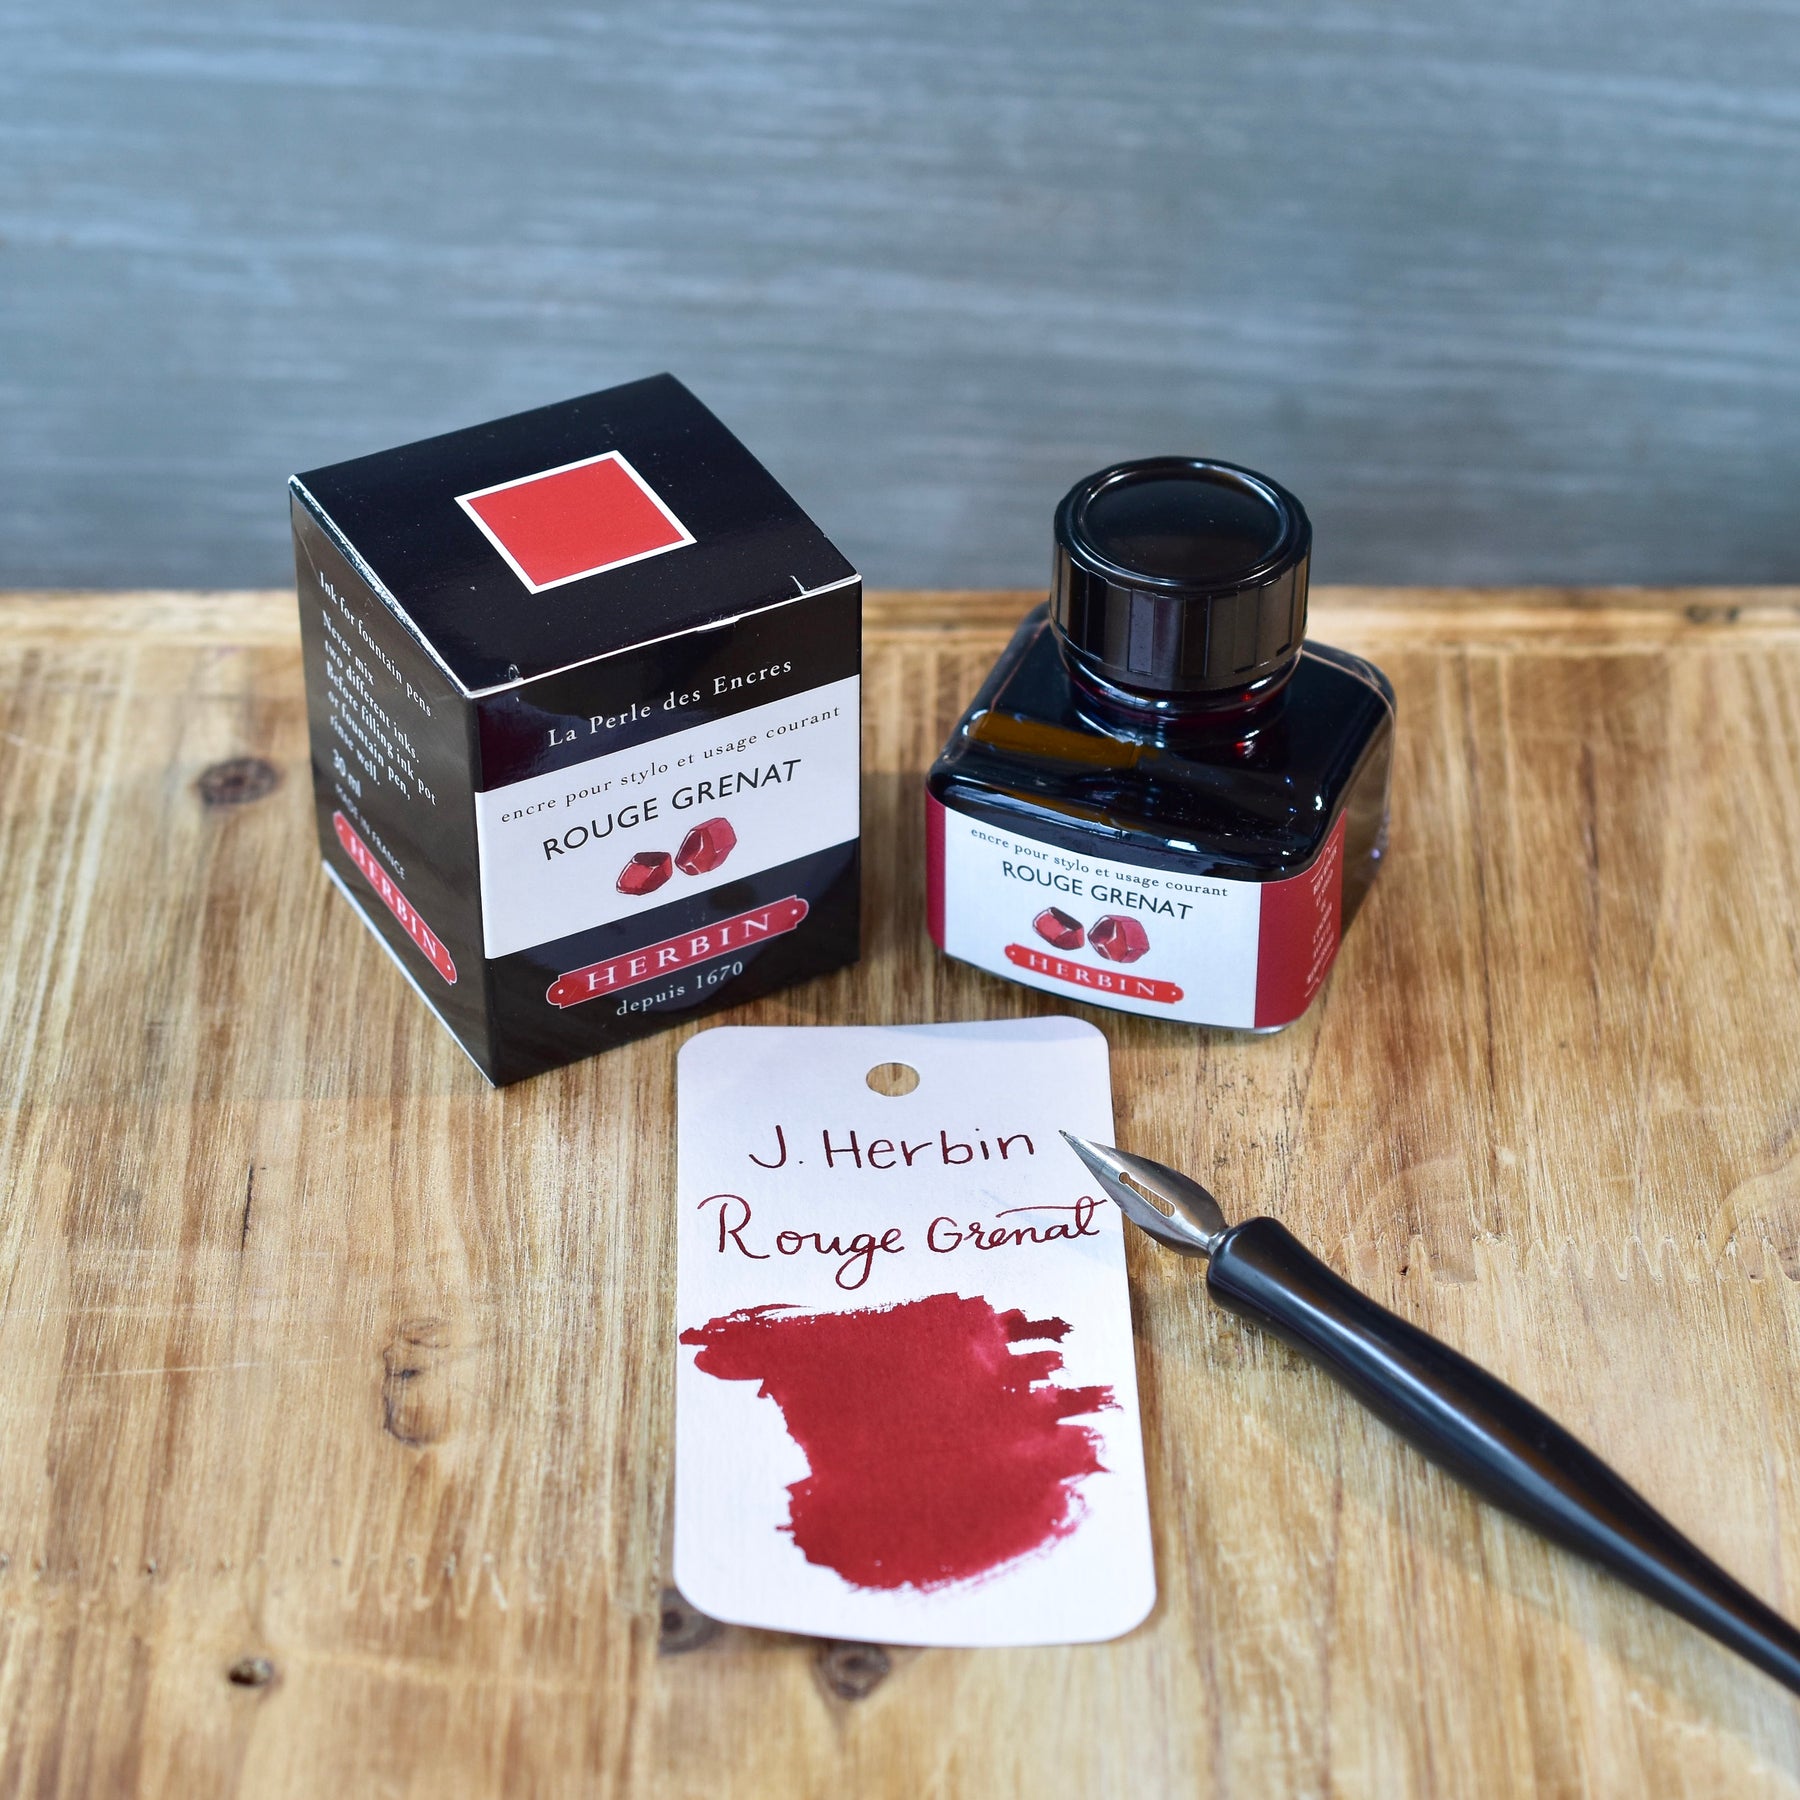 J. Herbin Fountain Pen Ink Cartridges - Rouge Grenat (Garnet Red)